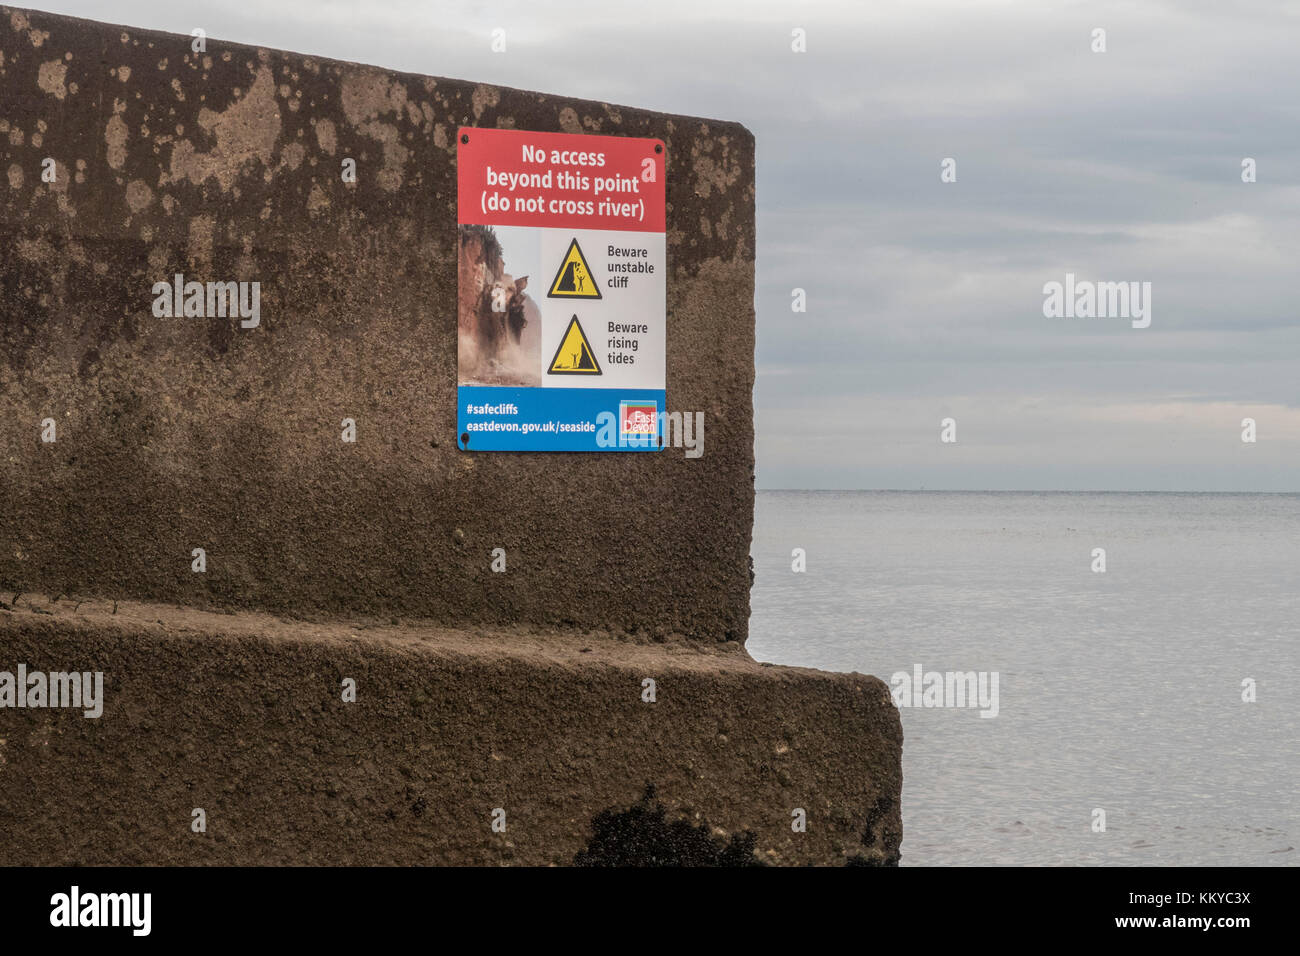 Segnale di avvertimento sul lungomare a Sidmouth, non cross river, instabile cliff,attenzione crescente delle maree. Foto Stock